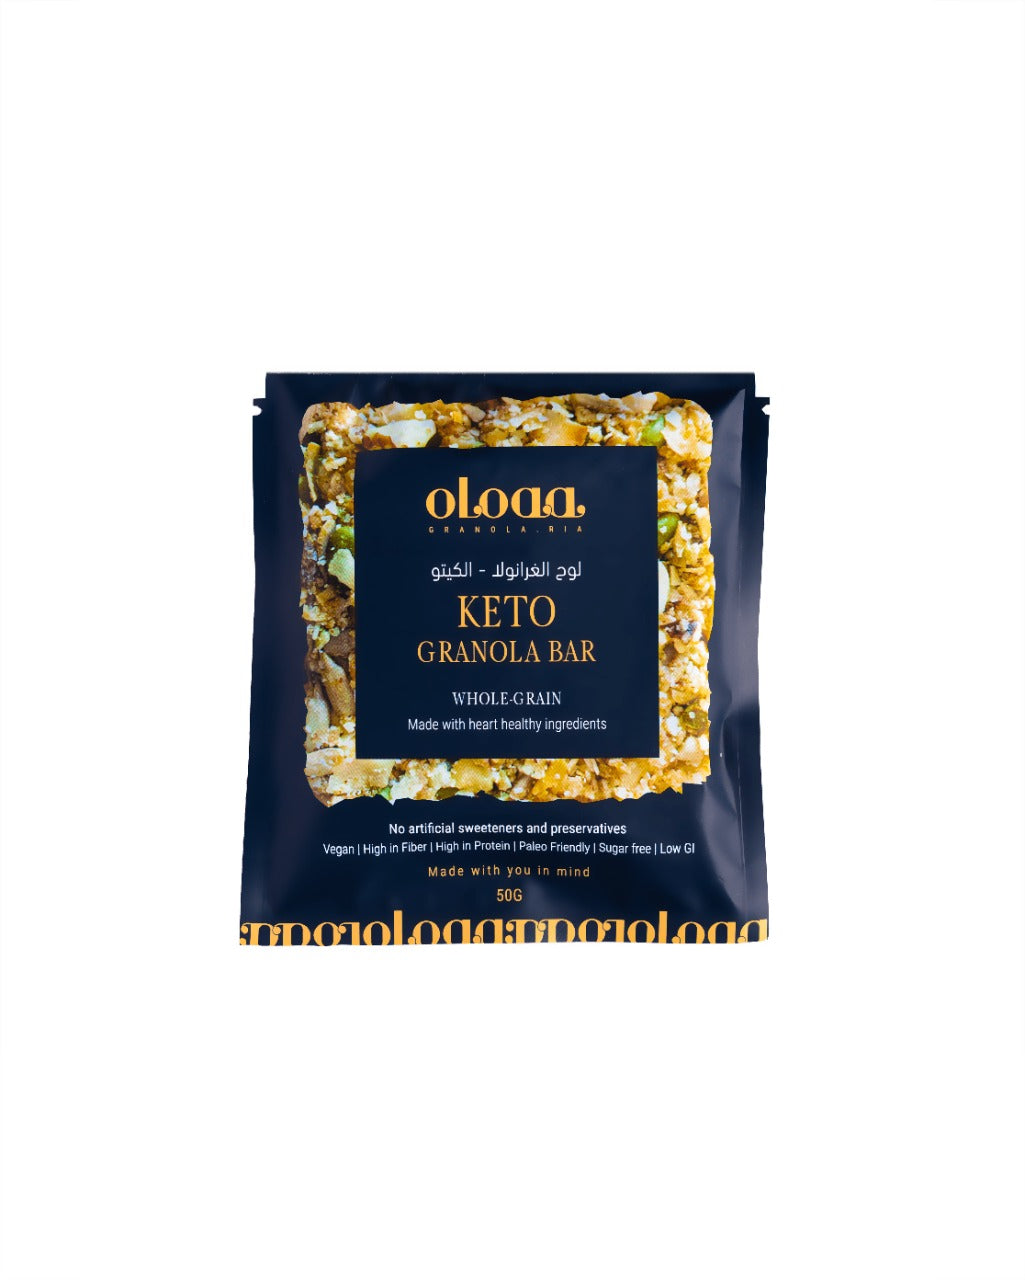 OLOAA Granola Bar - Keto, 50g